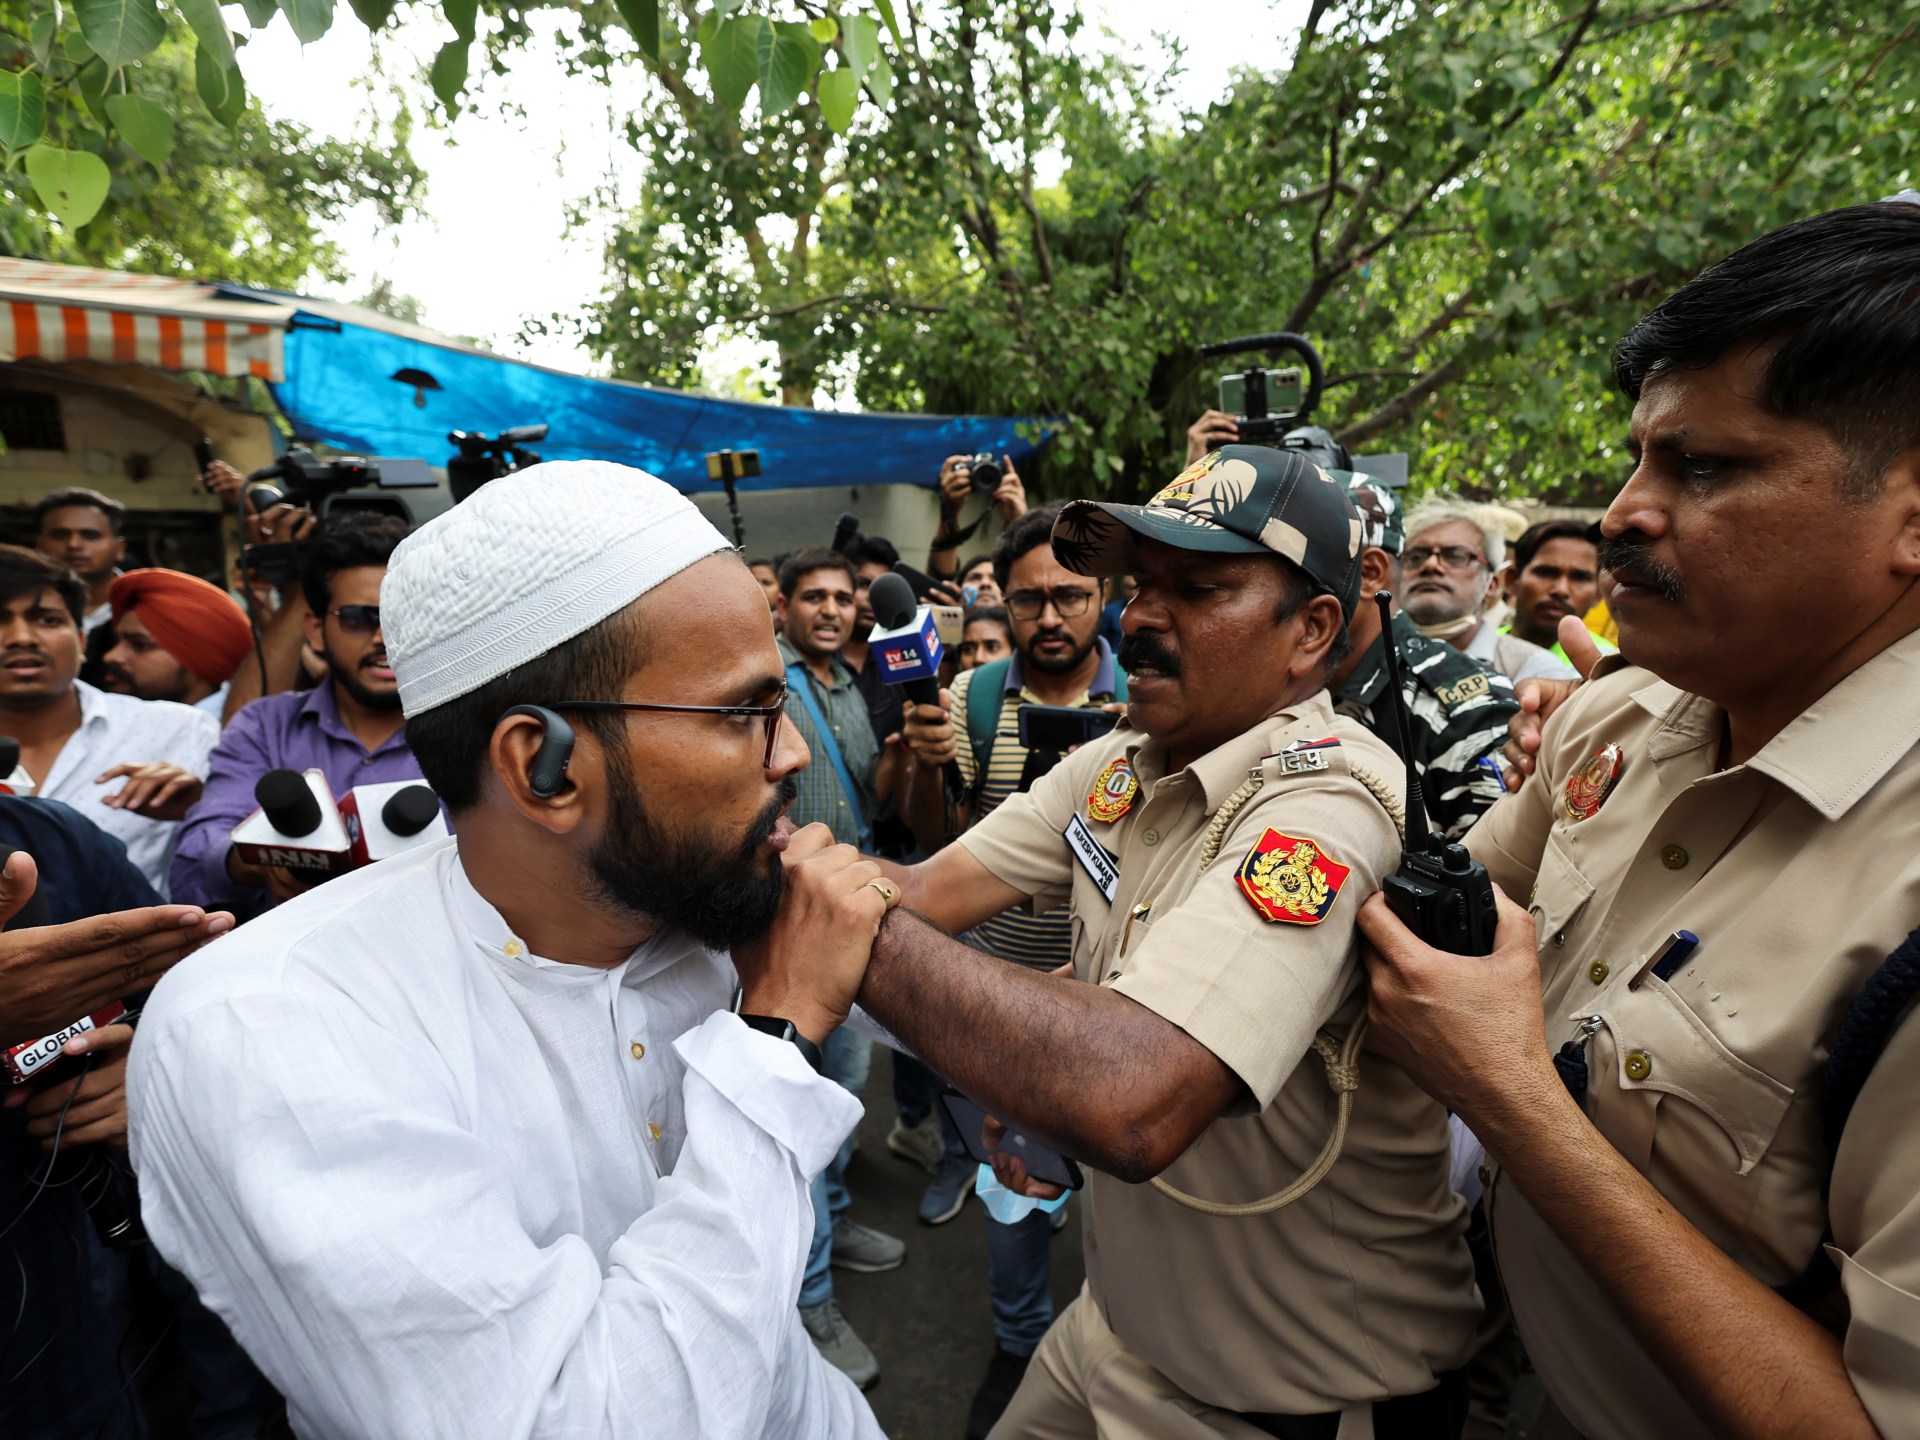 الهند تتجه لتطبيق قانون مواطنة يرفضه المسلمون | أخبار – البوكس نيوز